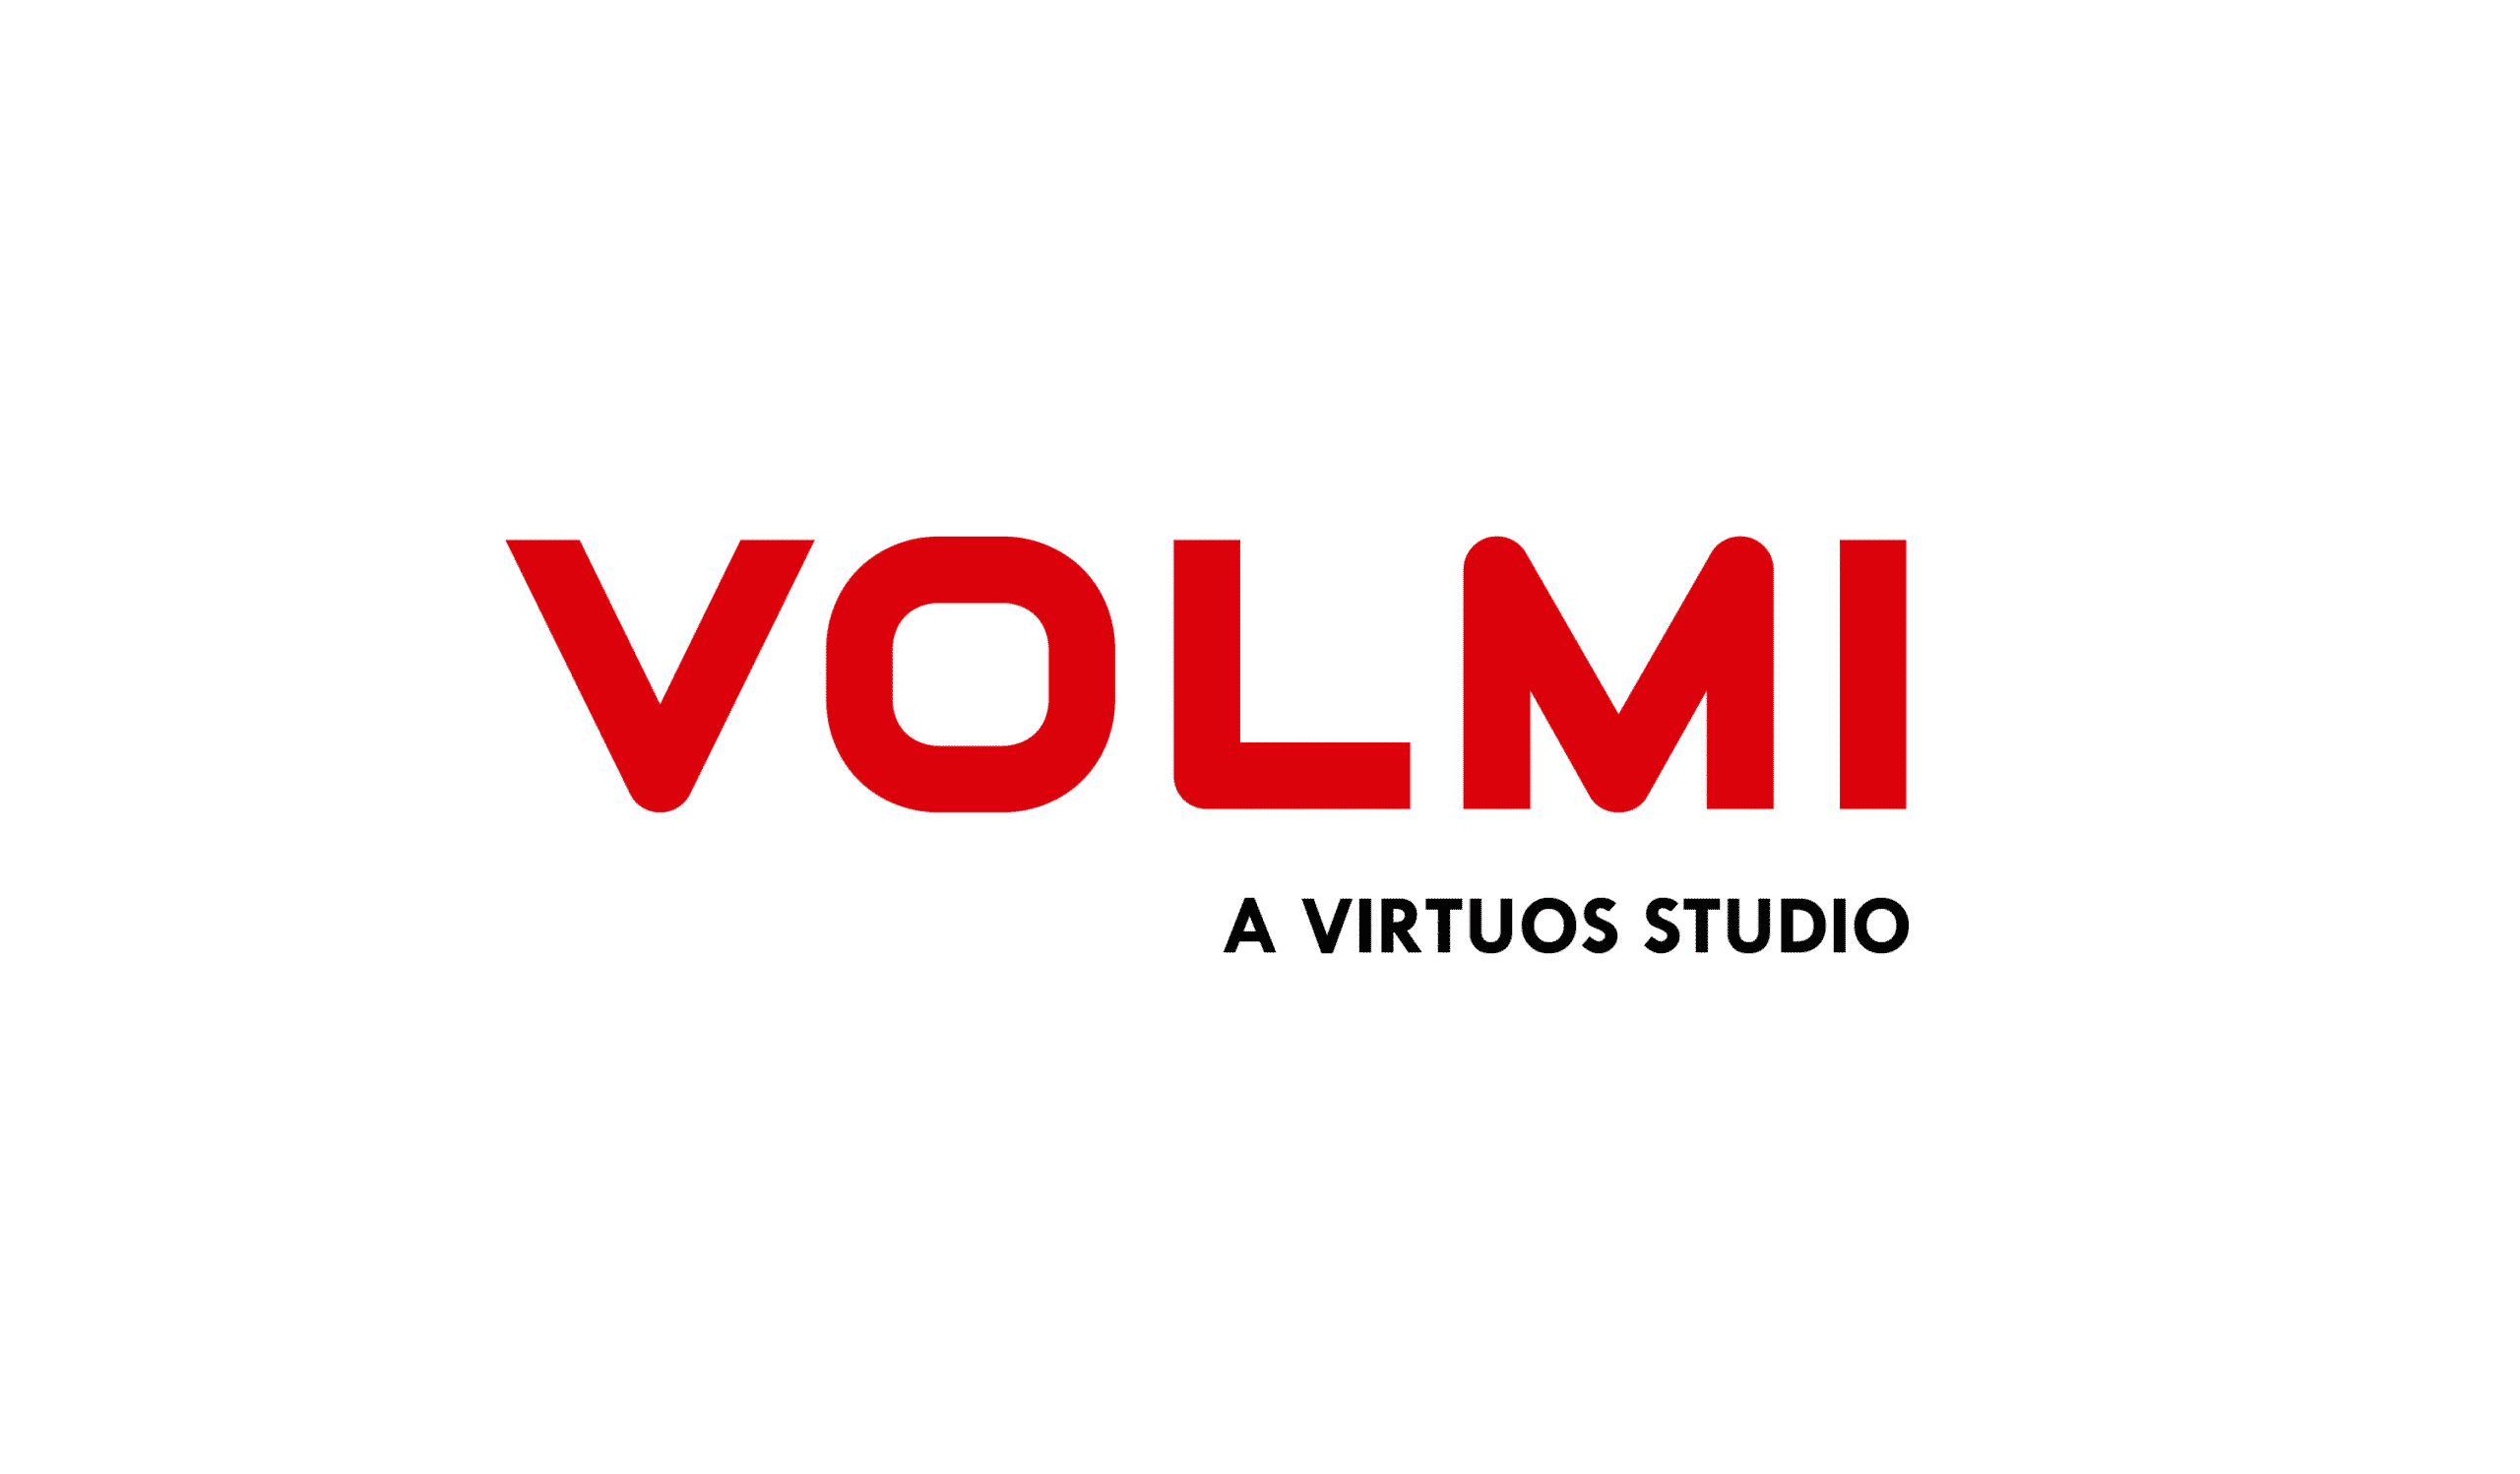 Virtuos tiếp tục mở rộng quy mô toàn cầu với studio mới ở Kyiv, Ukraine